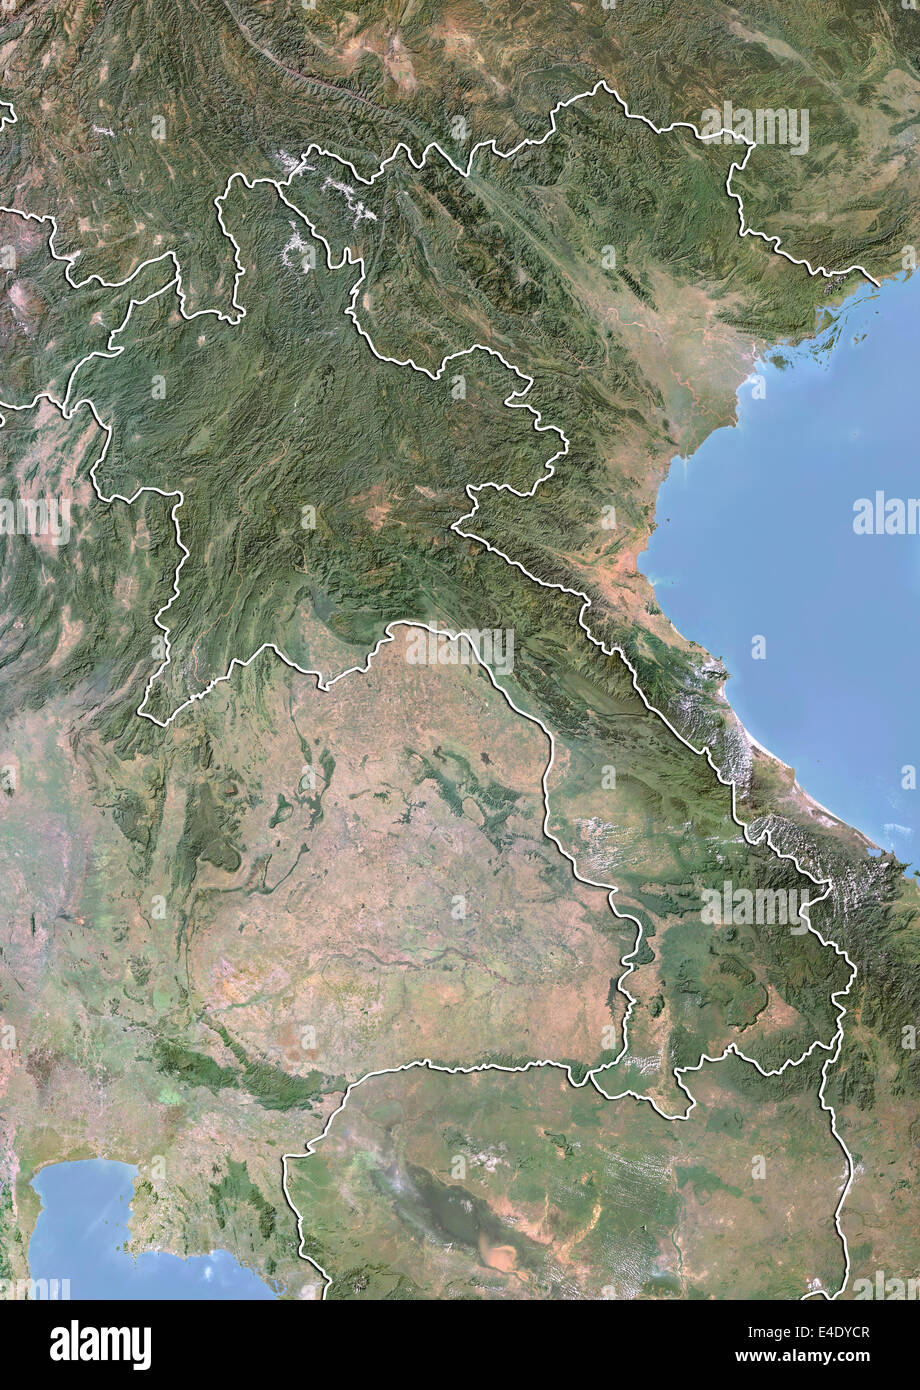 Le Laos, image satellite avec effet de choc, avec bordure Banque D'Images